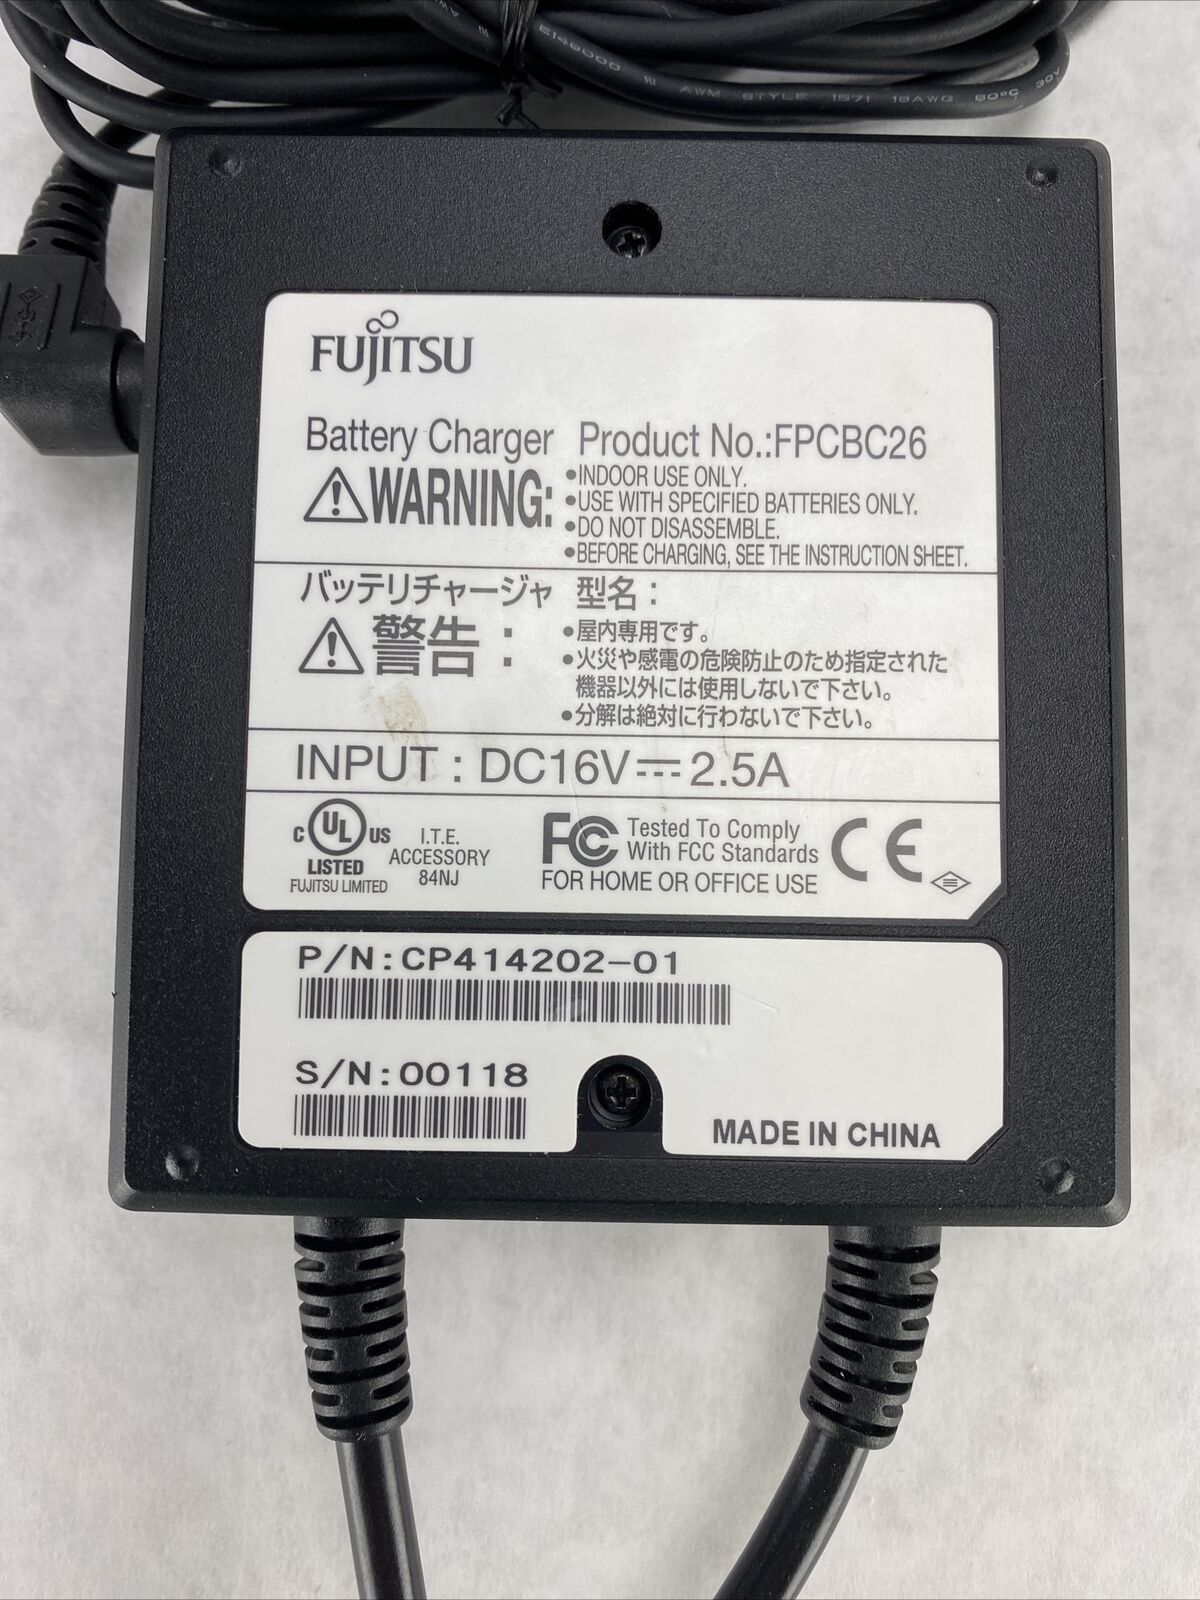 Fujitsu OEM Battery Charger AC Adapter for Fujitsu Stylistic Q550 Q552 Q572